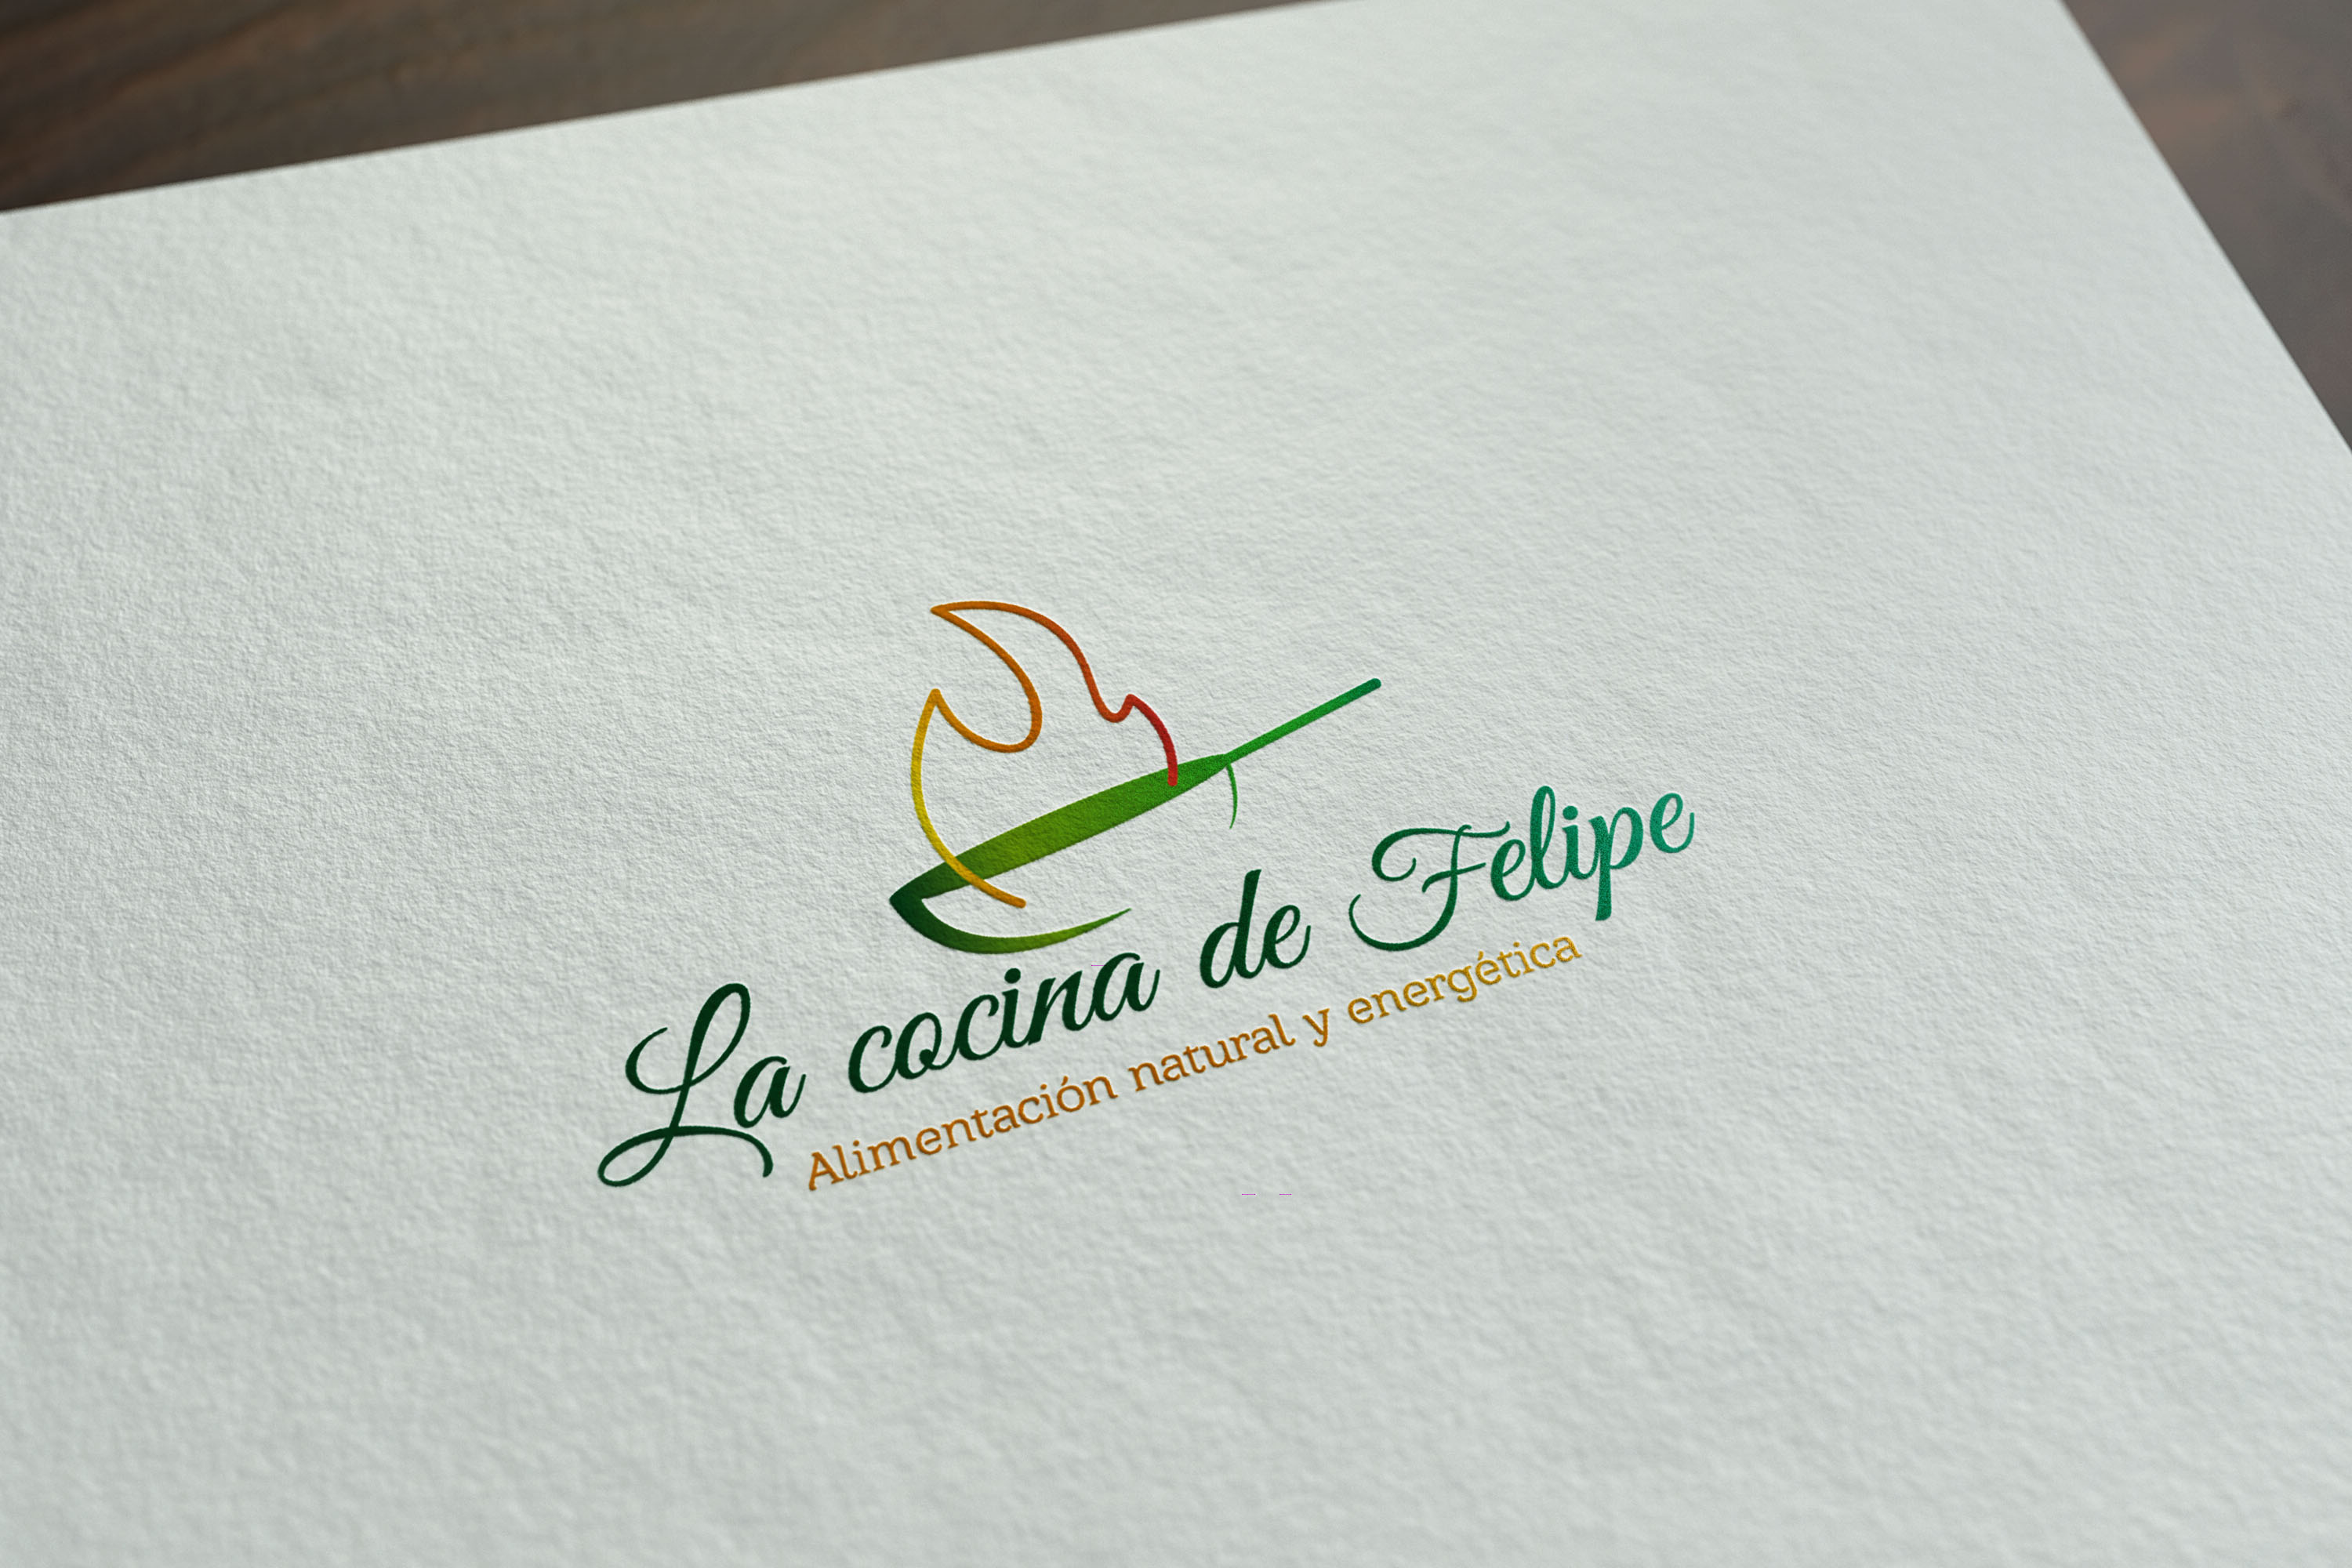 LaCocinaFelipe logo